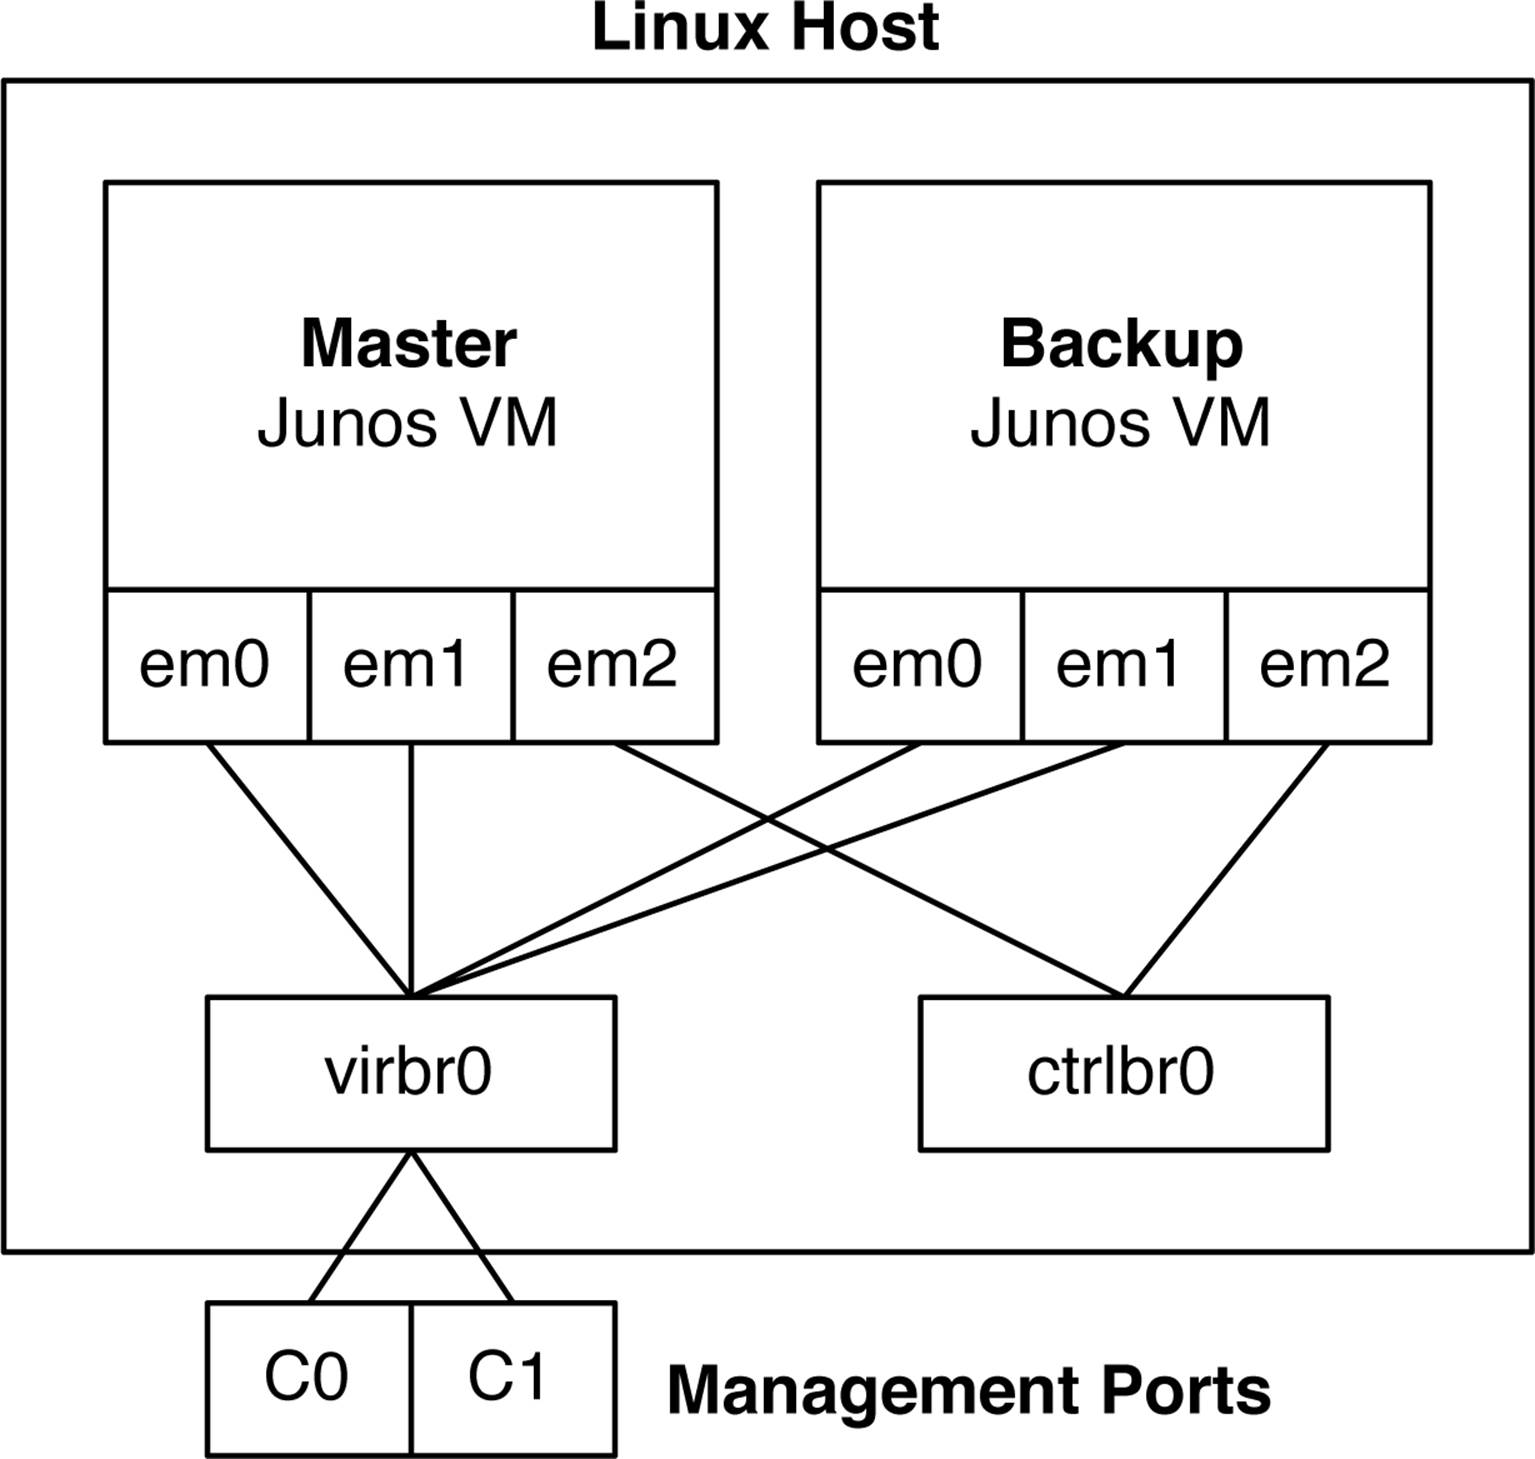 The QFX5100 Linux KVM and management architecture